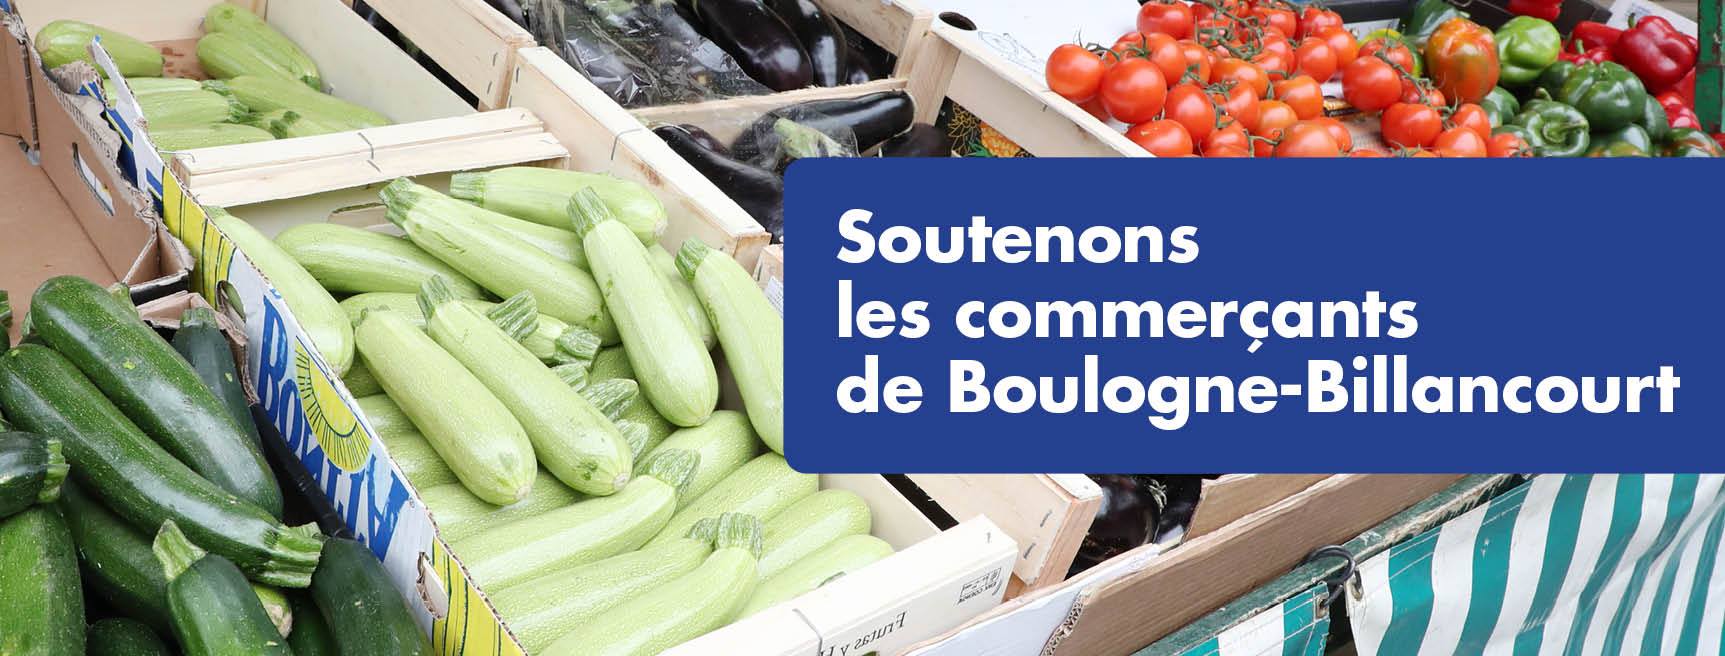 Soutenons les commerçants de Boulogne-Billancourt